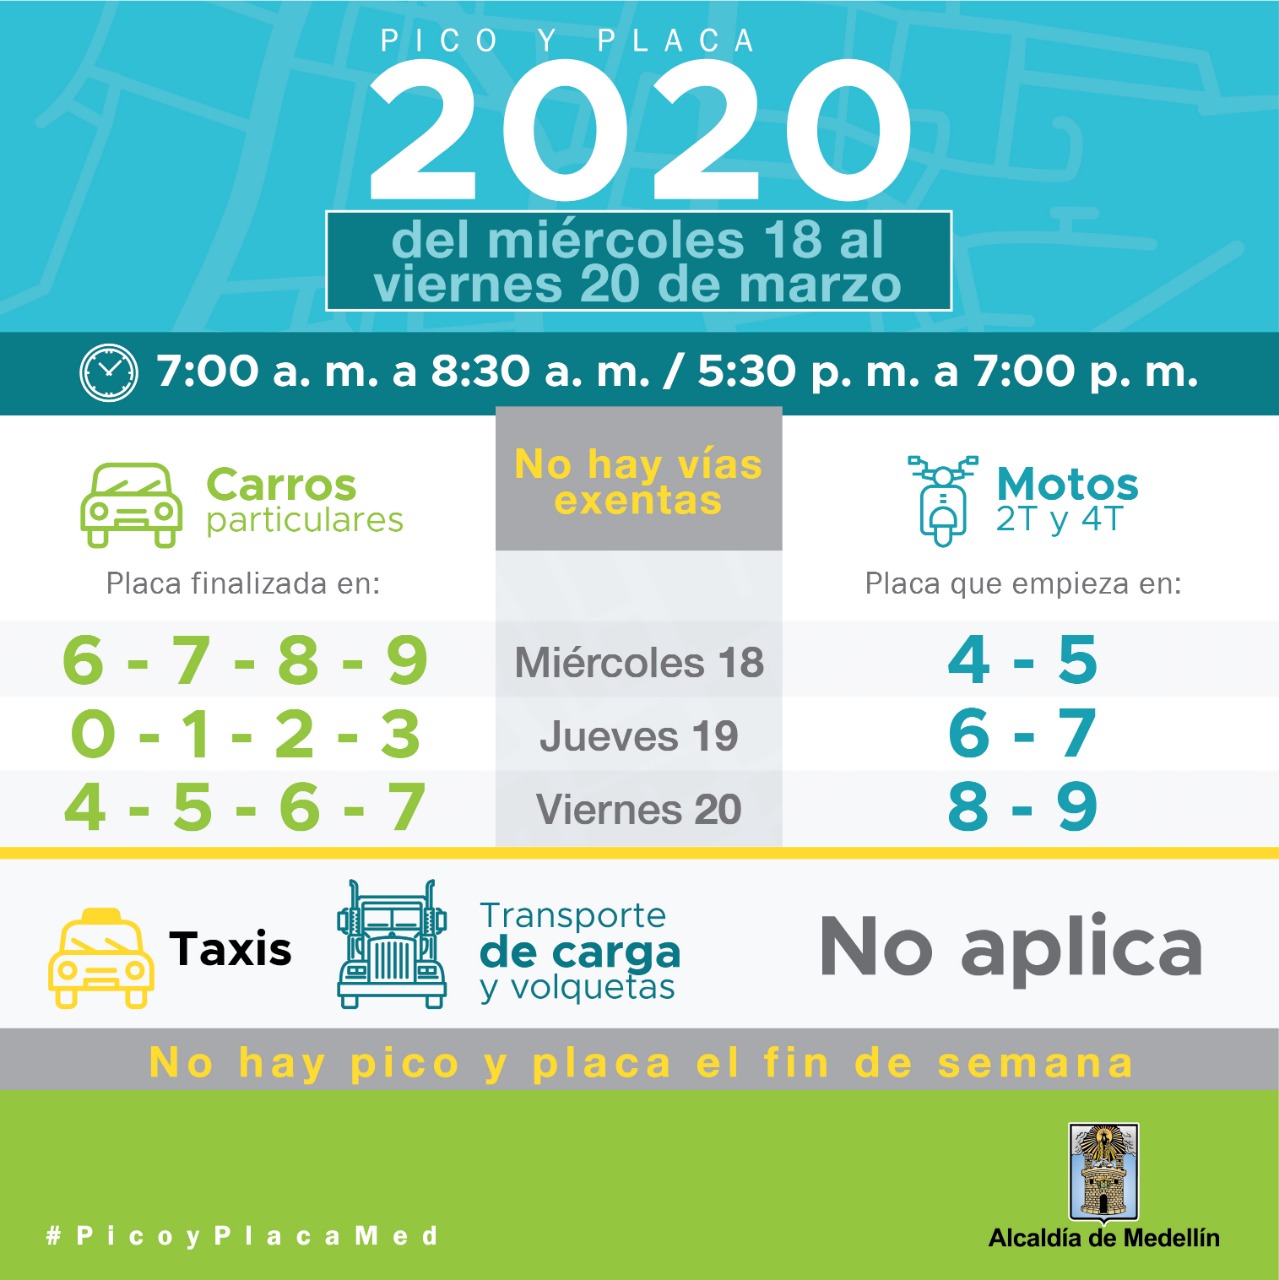 Pico y placa en Medellín para el viernes 20 de marzo de 2020